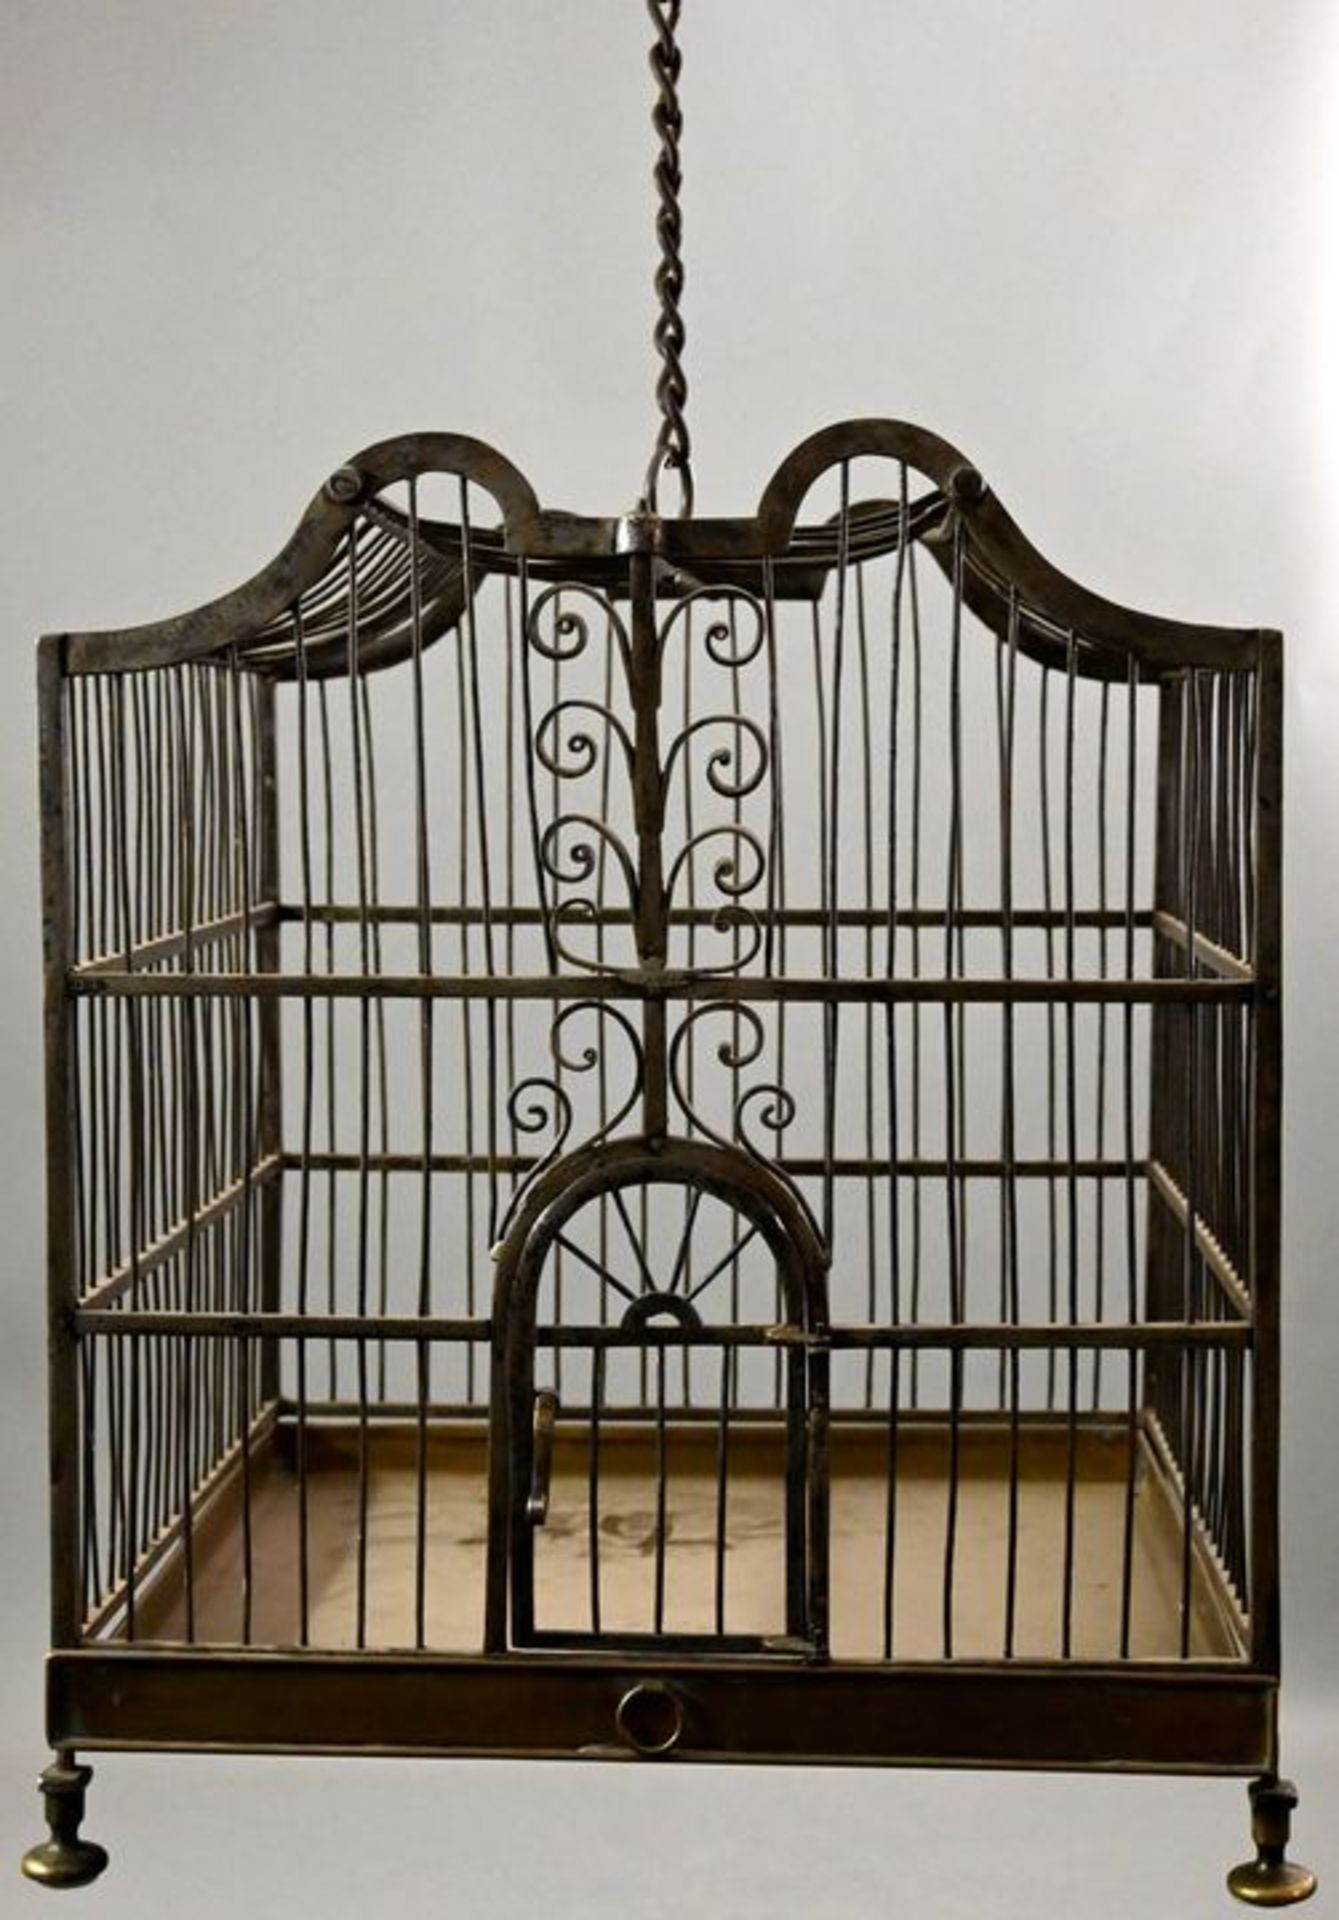 Vogelkäfig / Bird cage